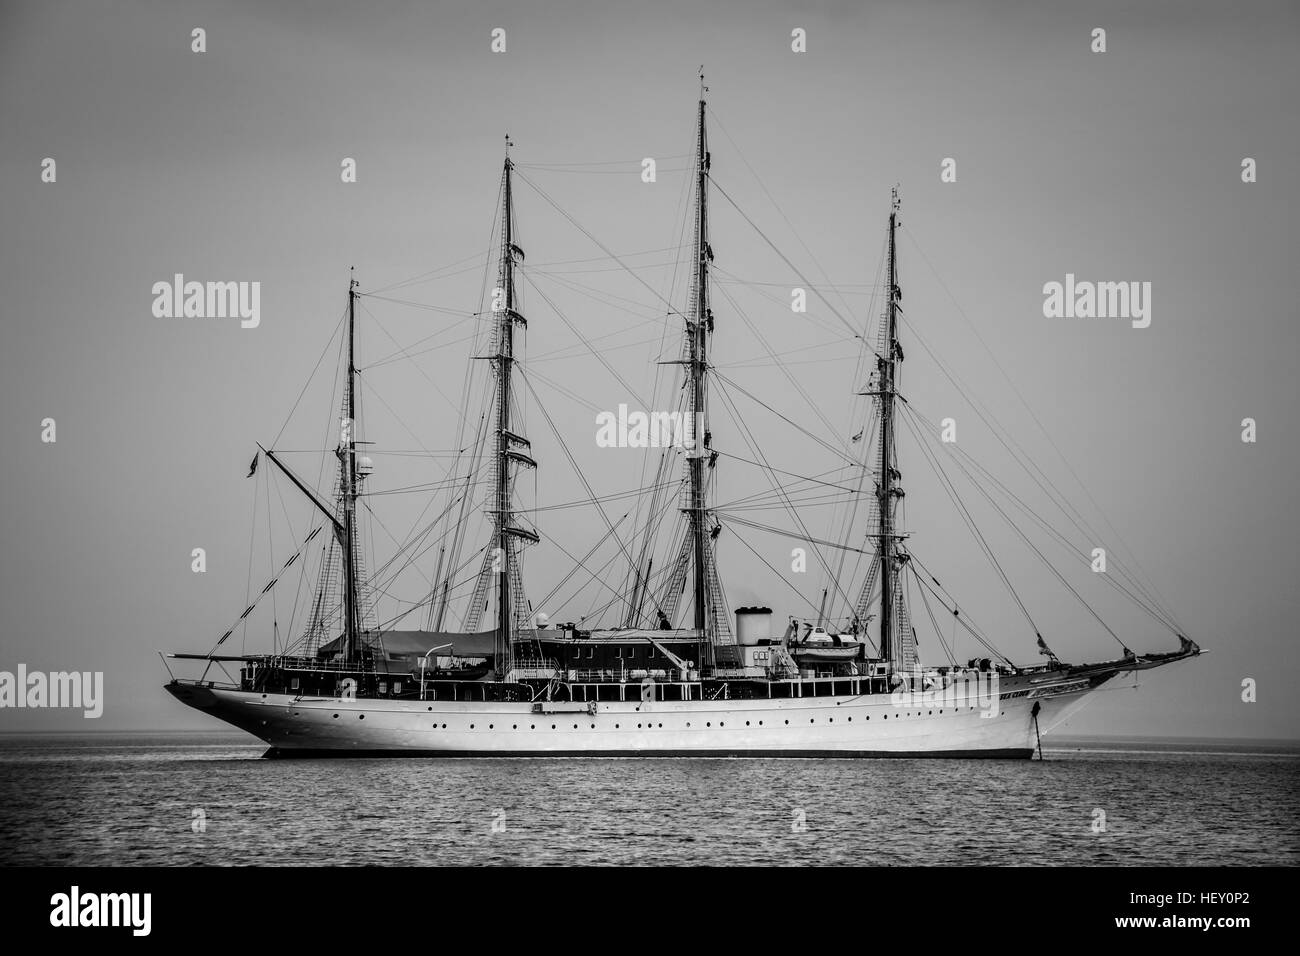 Sailing ship near Monemvasia Greece Stock Photo